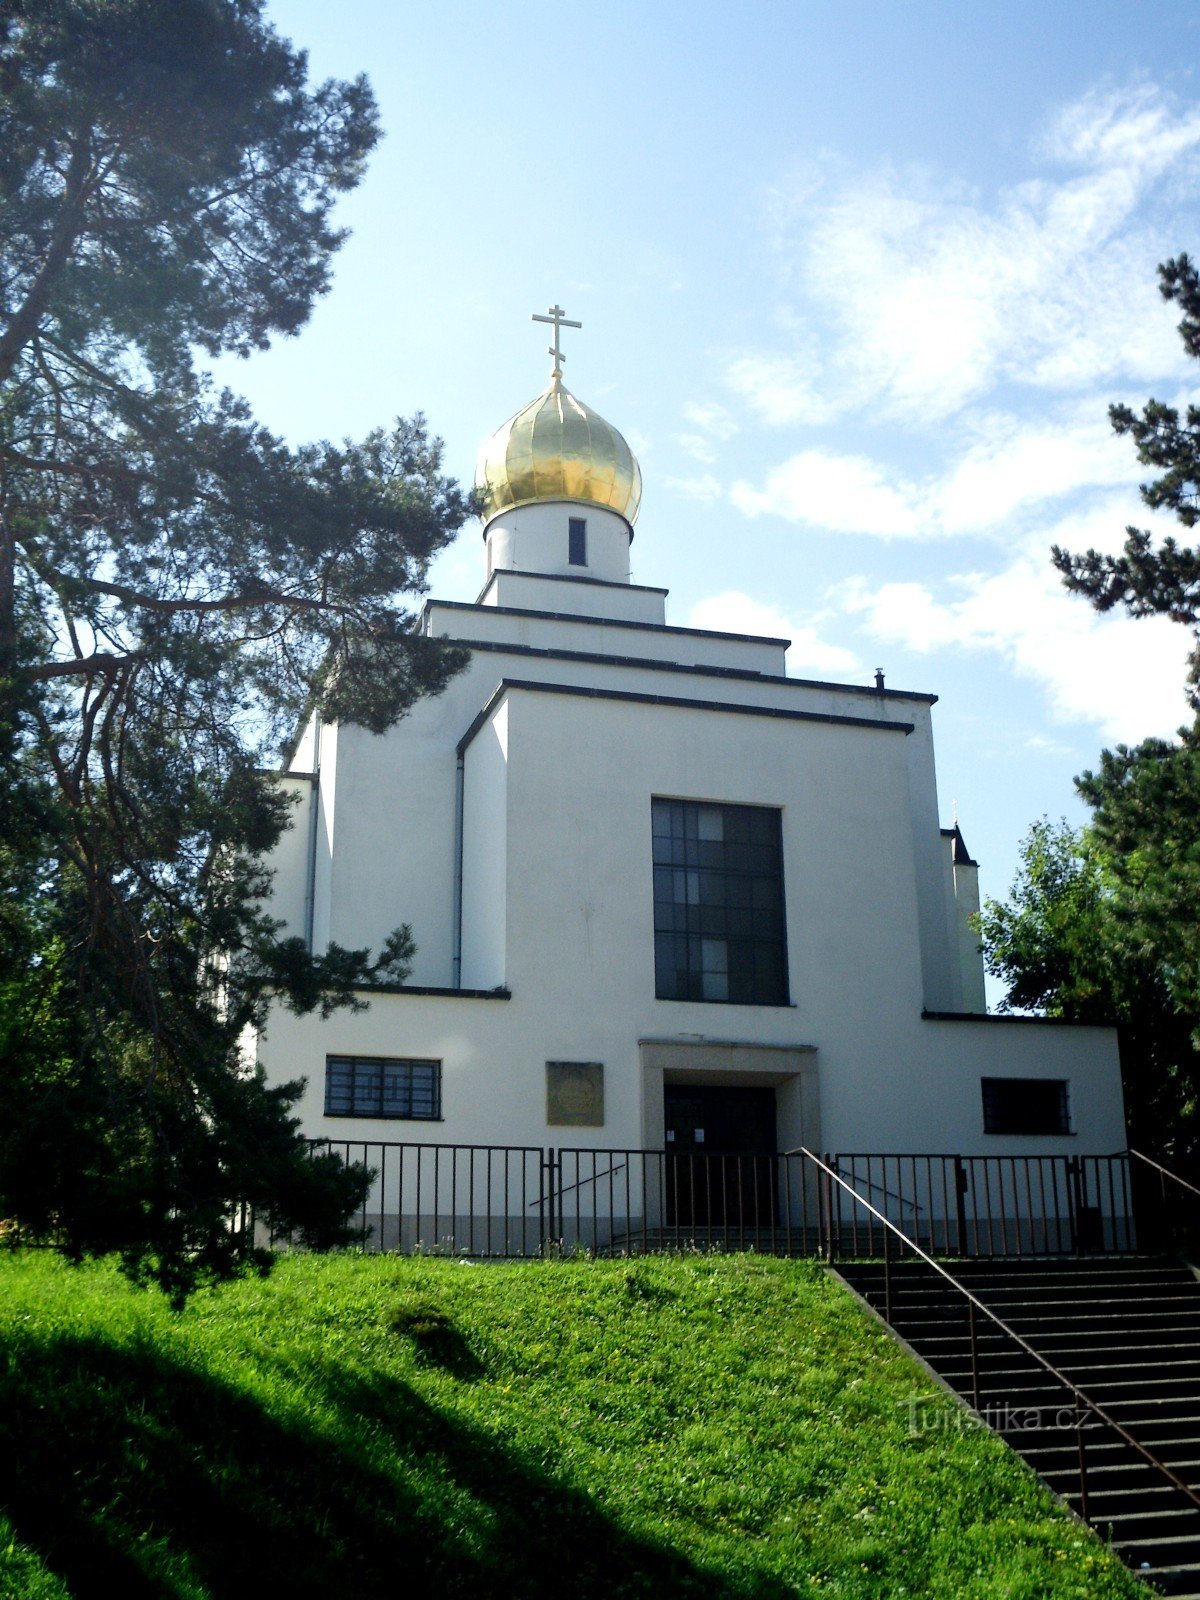 Brno - Szent István katedrális. Vencel